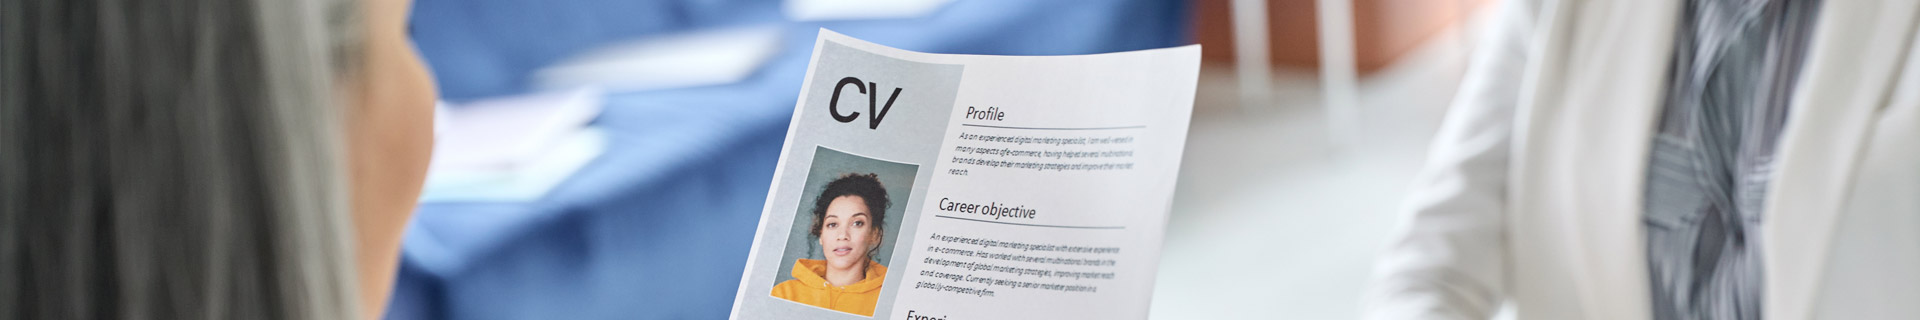 Profielfoto maken | Wij geven je alle informatie die je nodig hebt om een goede foto voor jouw CV te maken